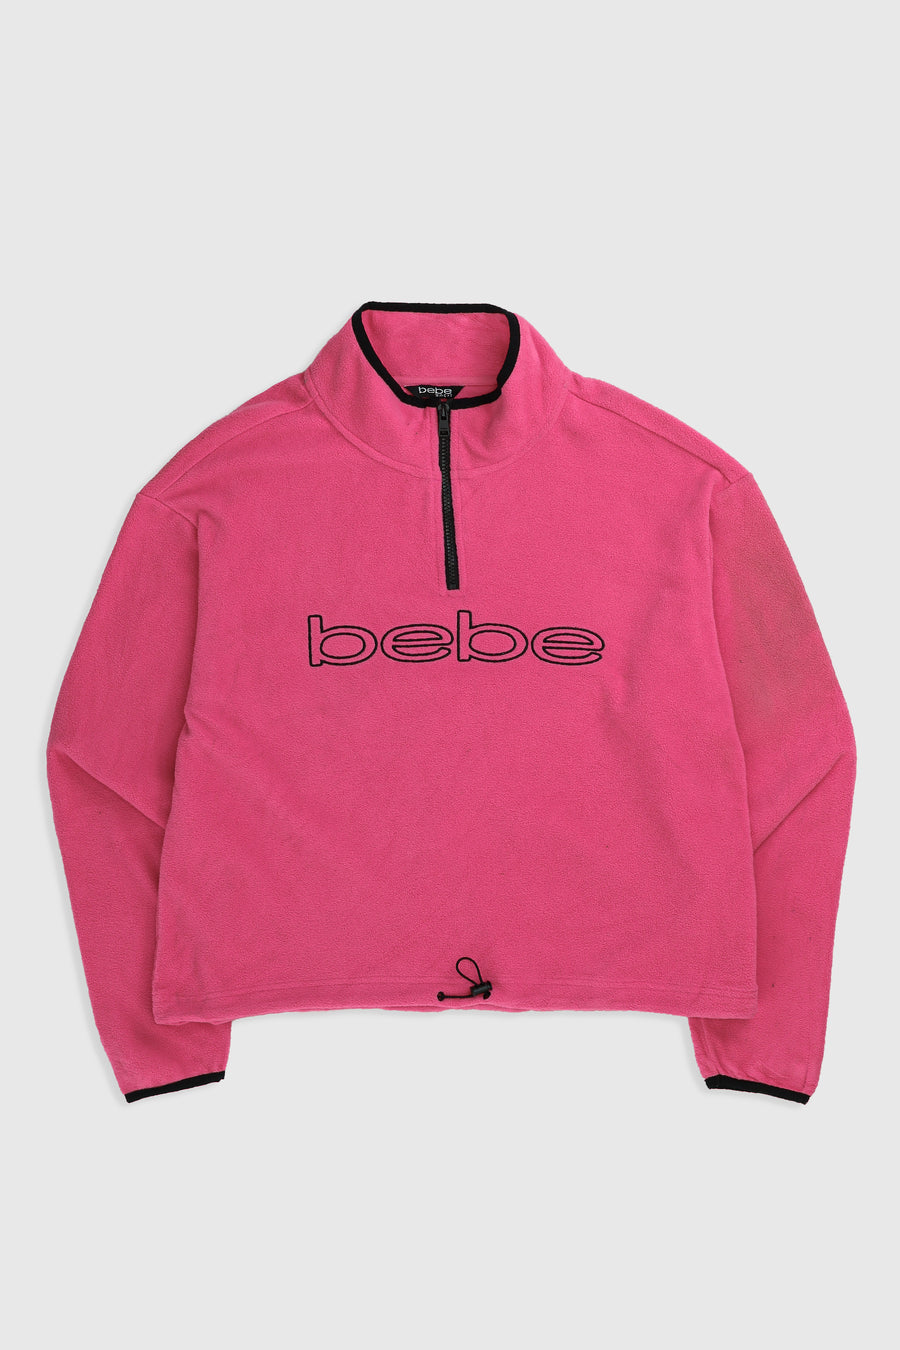 Vintage Bebe Fleece Jacket